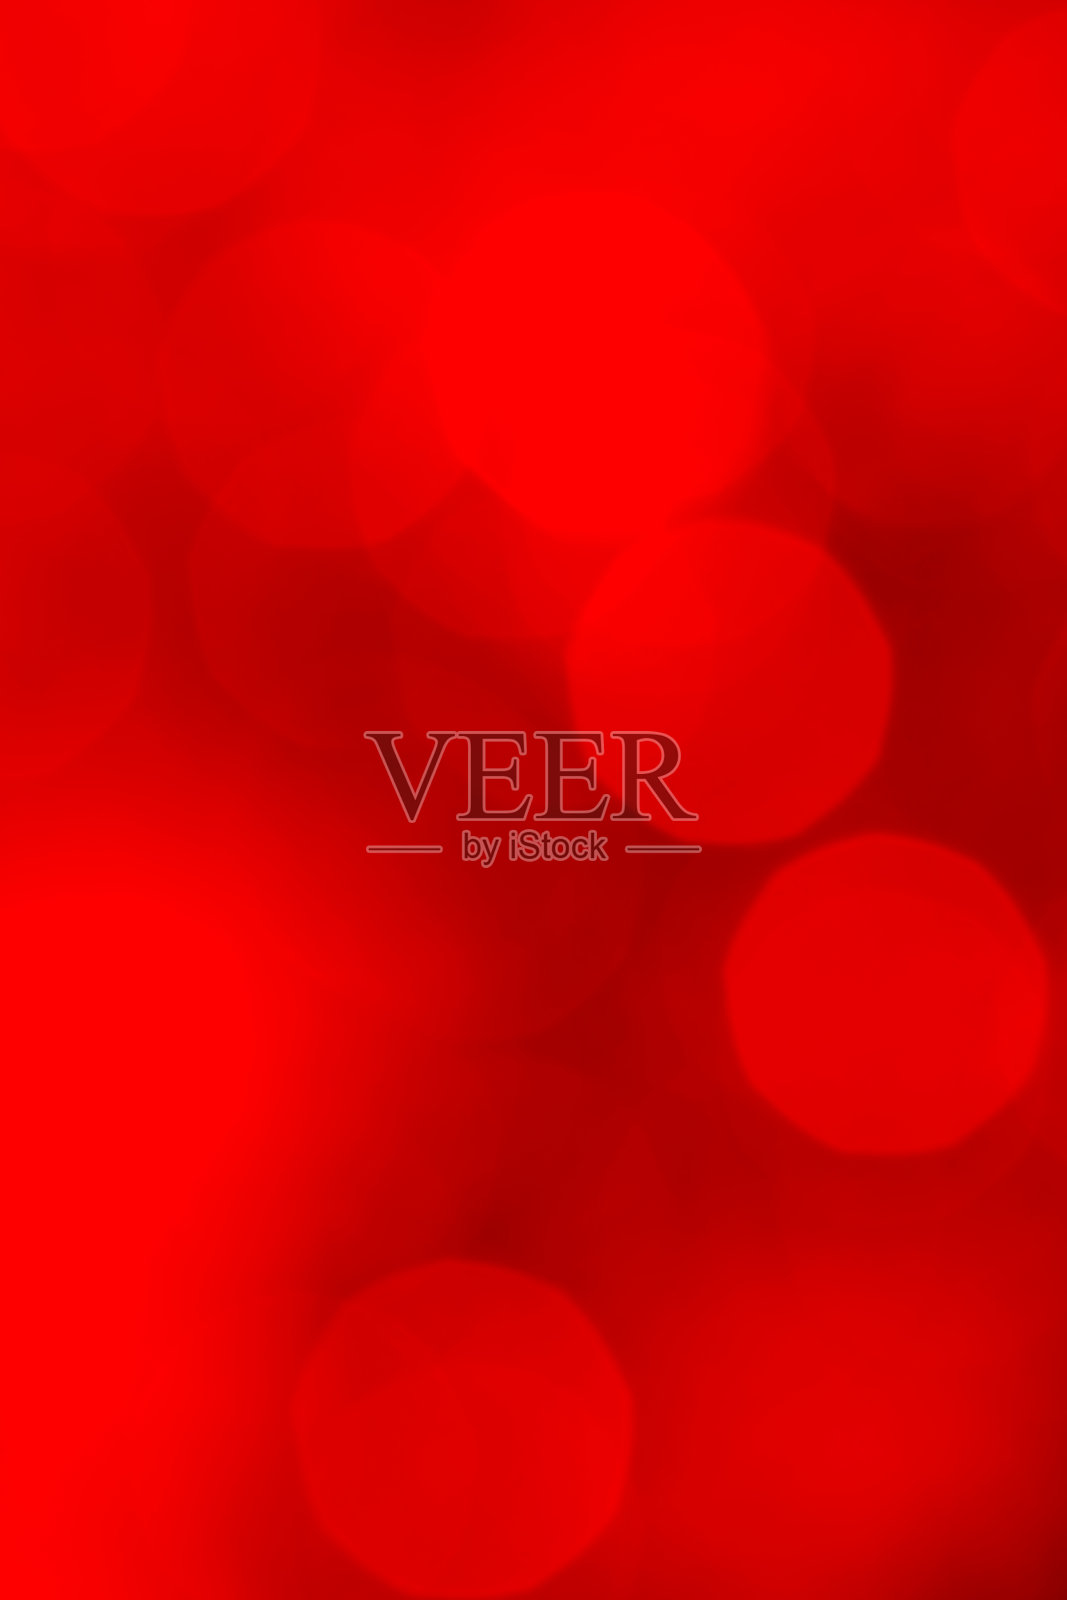 散焦灯光背景(红色)-高分辨率5000万像素。插画图片素材